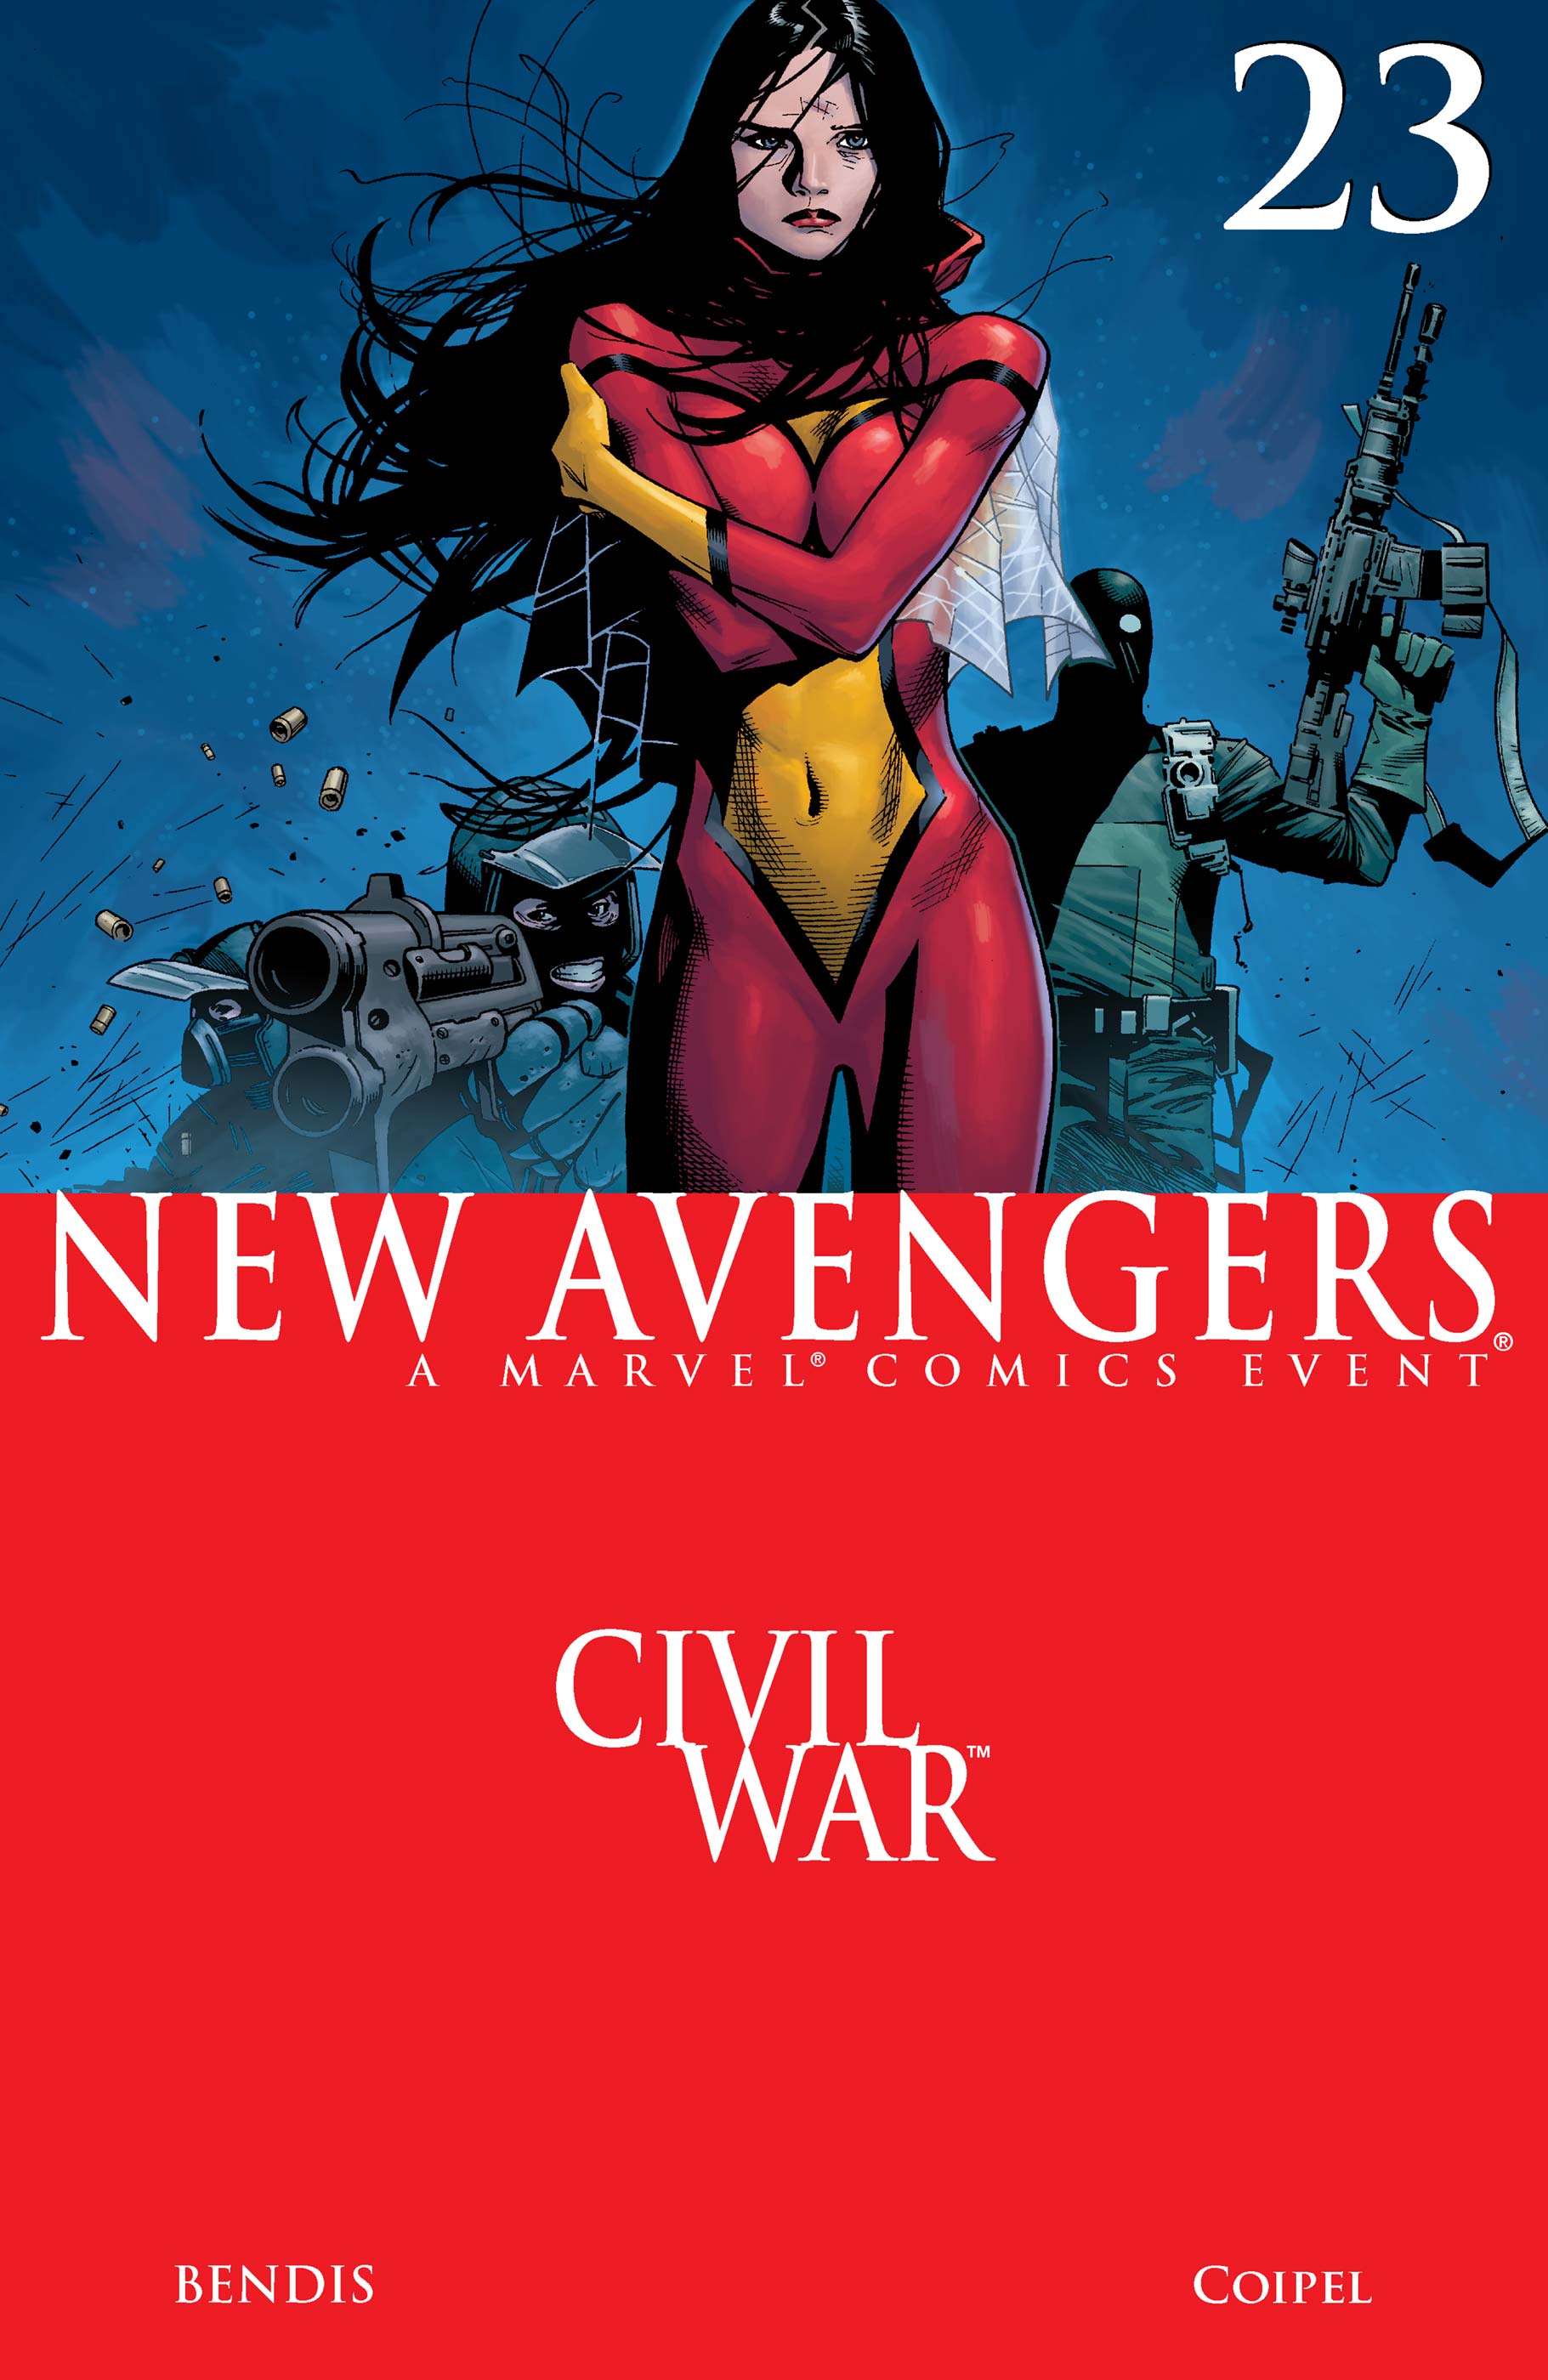 New Avengers (2004) #23